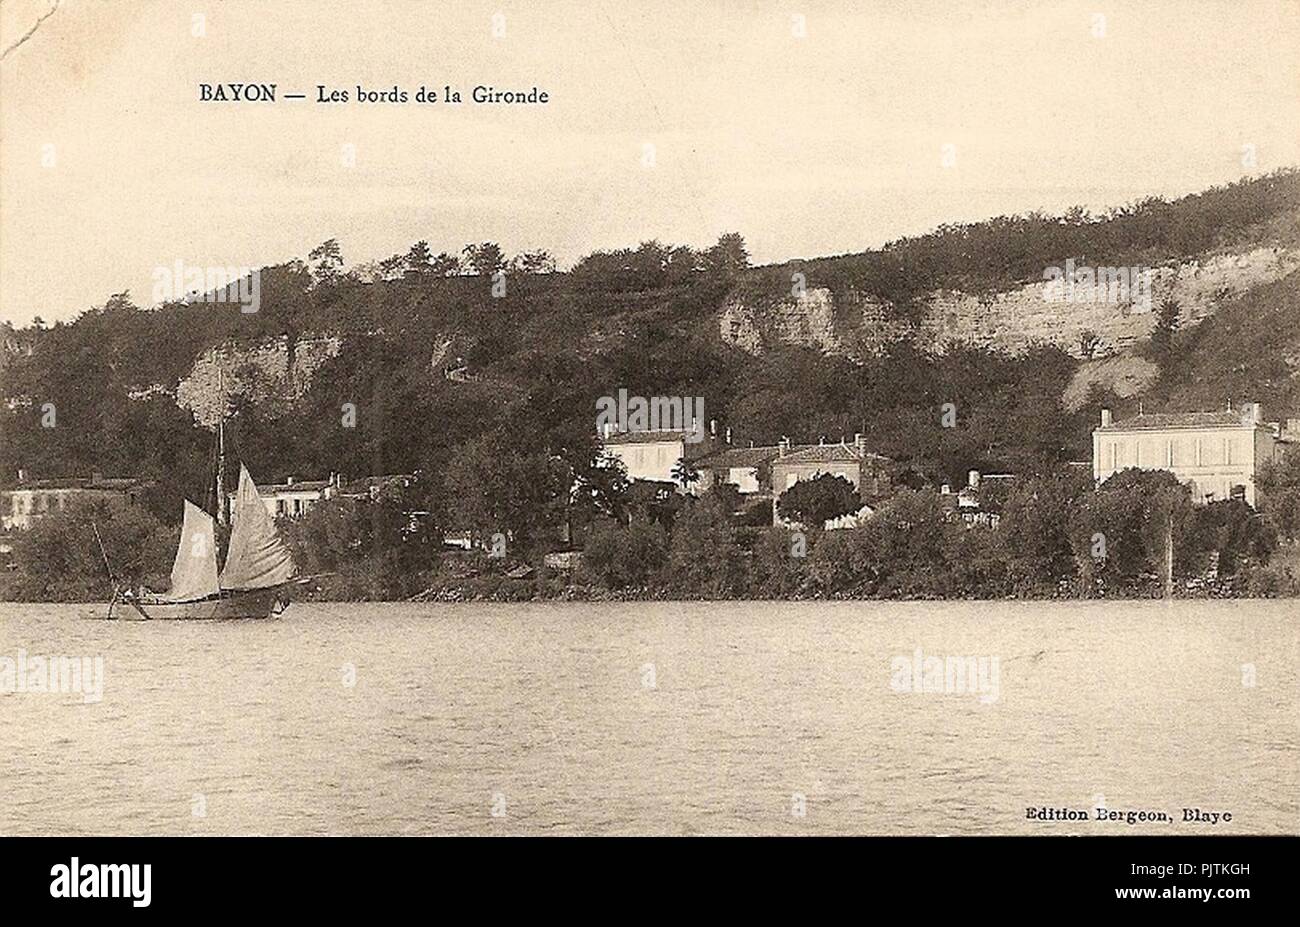 Bayon - bords de la Gironde. Stock Photo